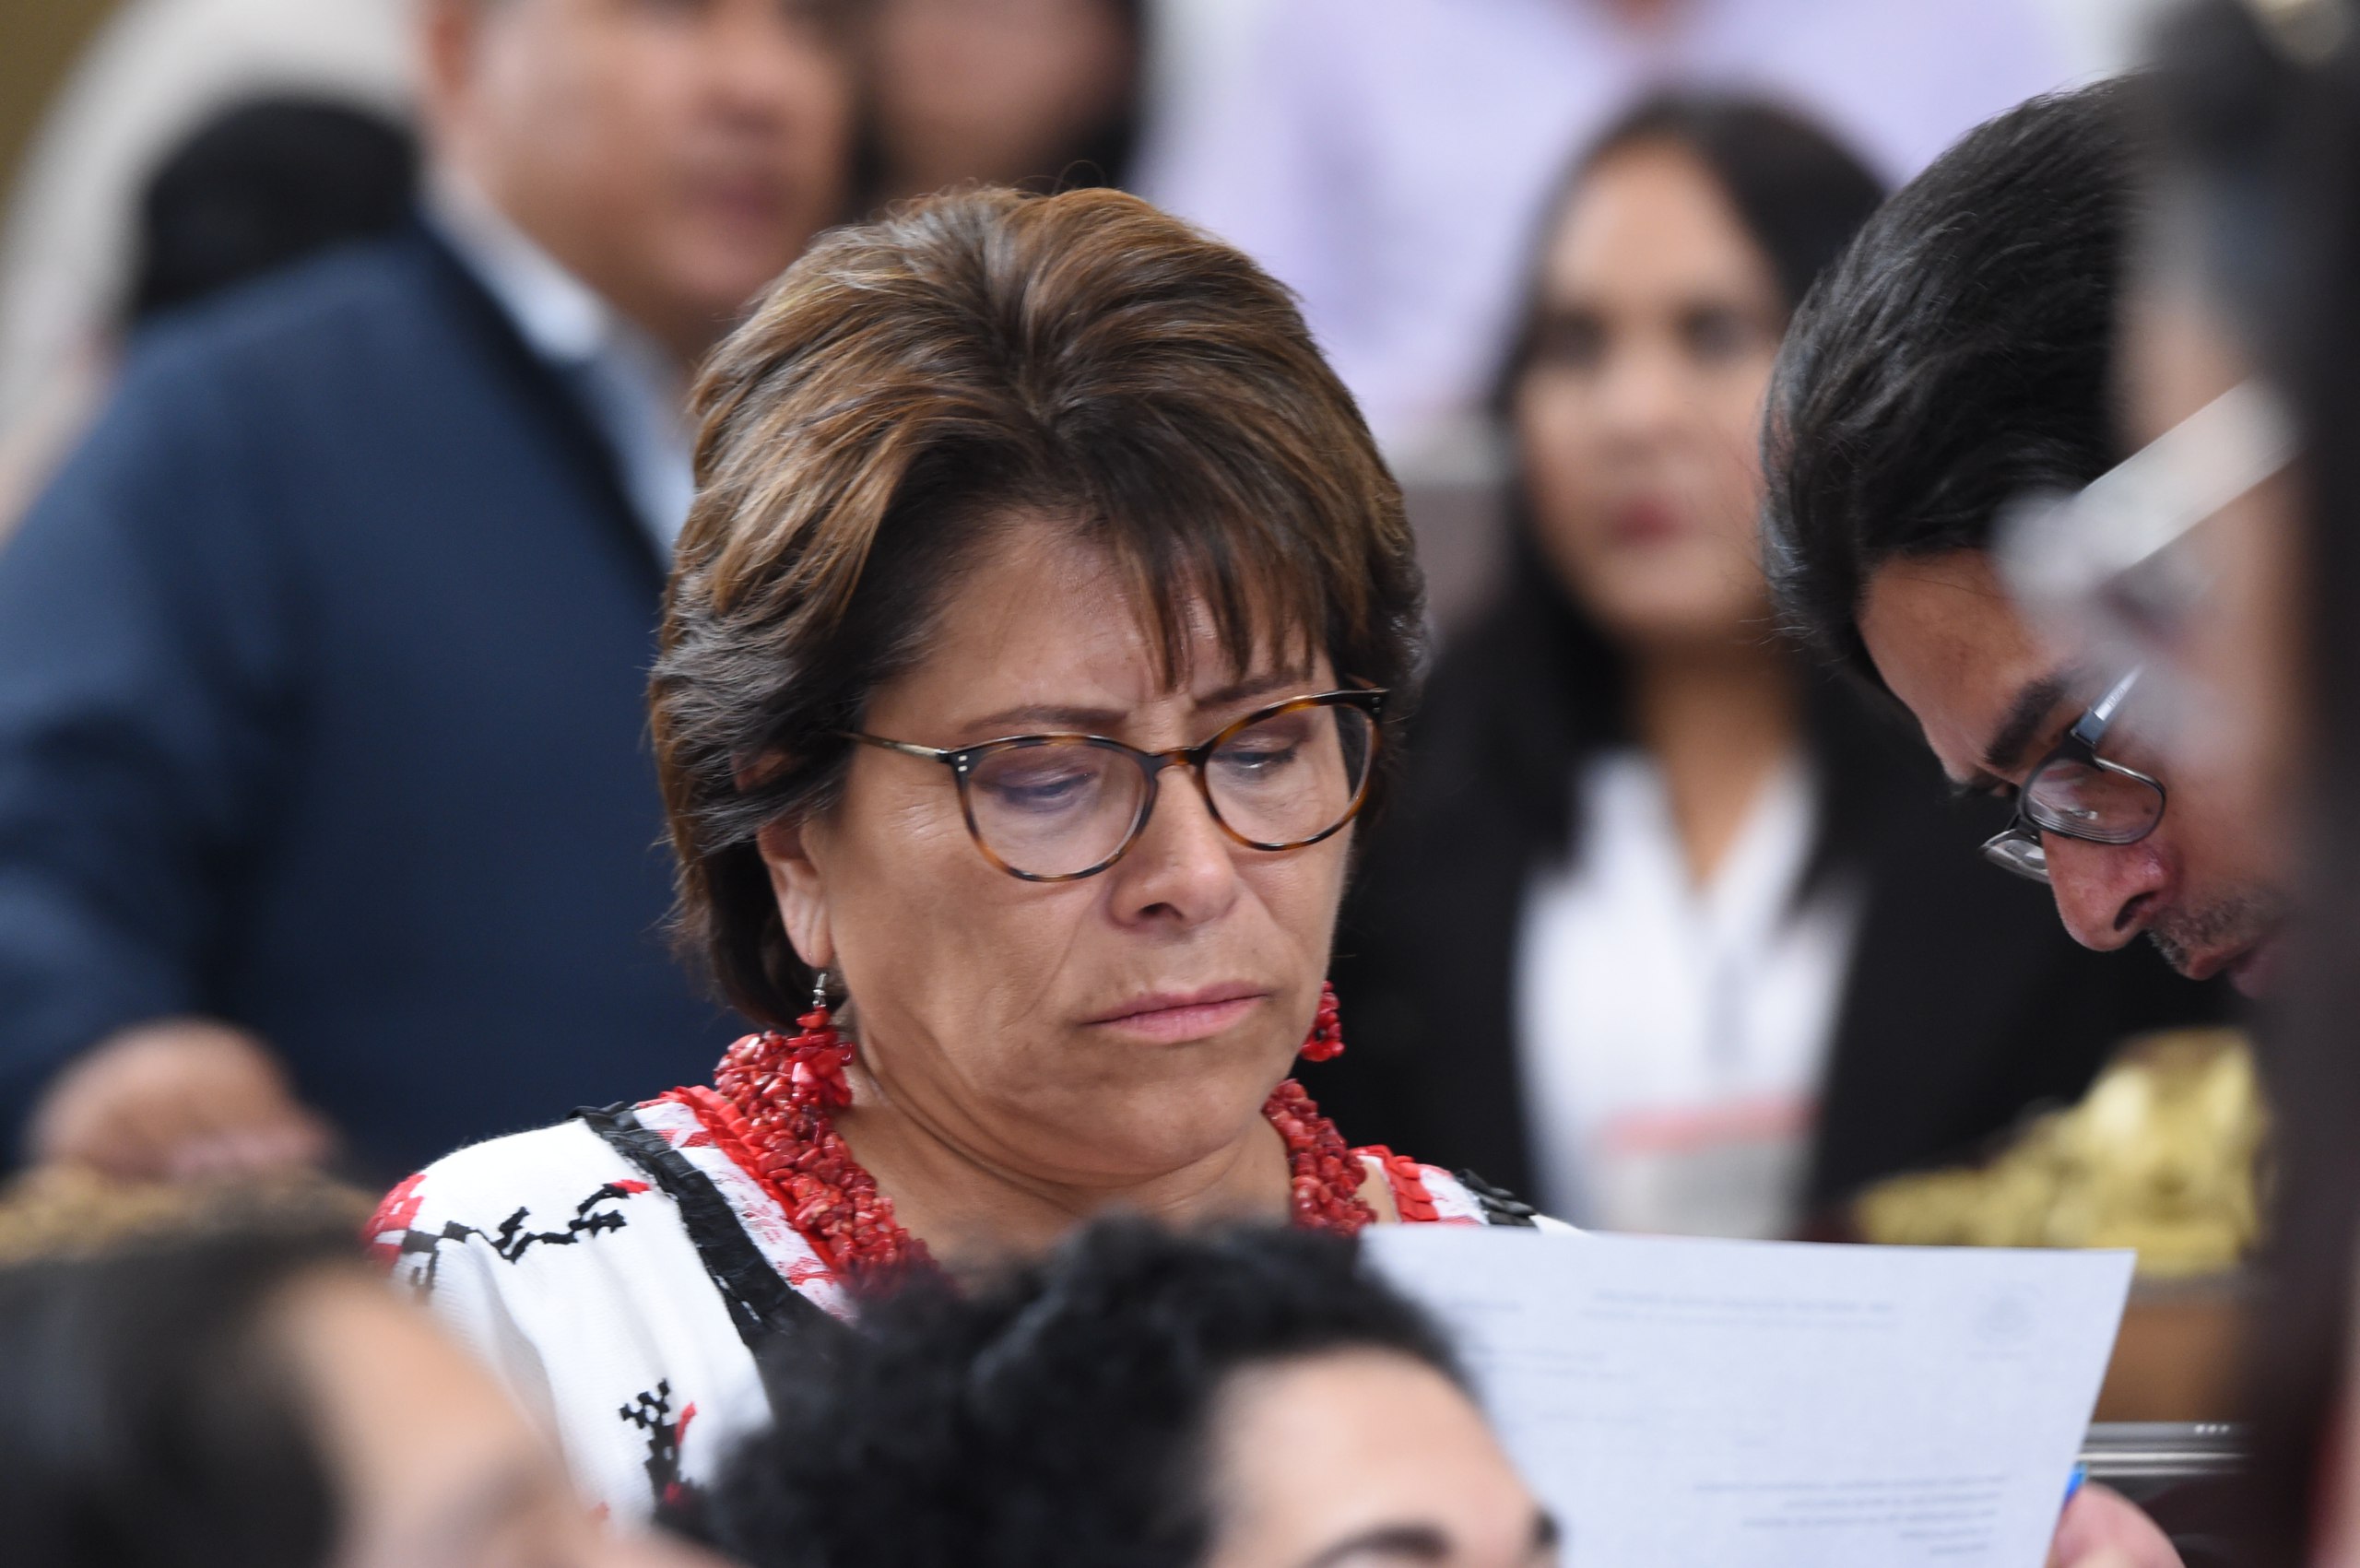 Proceden denuncias de la Diputada Martha Avila contra Sandra Cuevas y Santiago Taboada ante el IECM